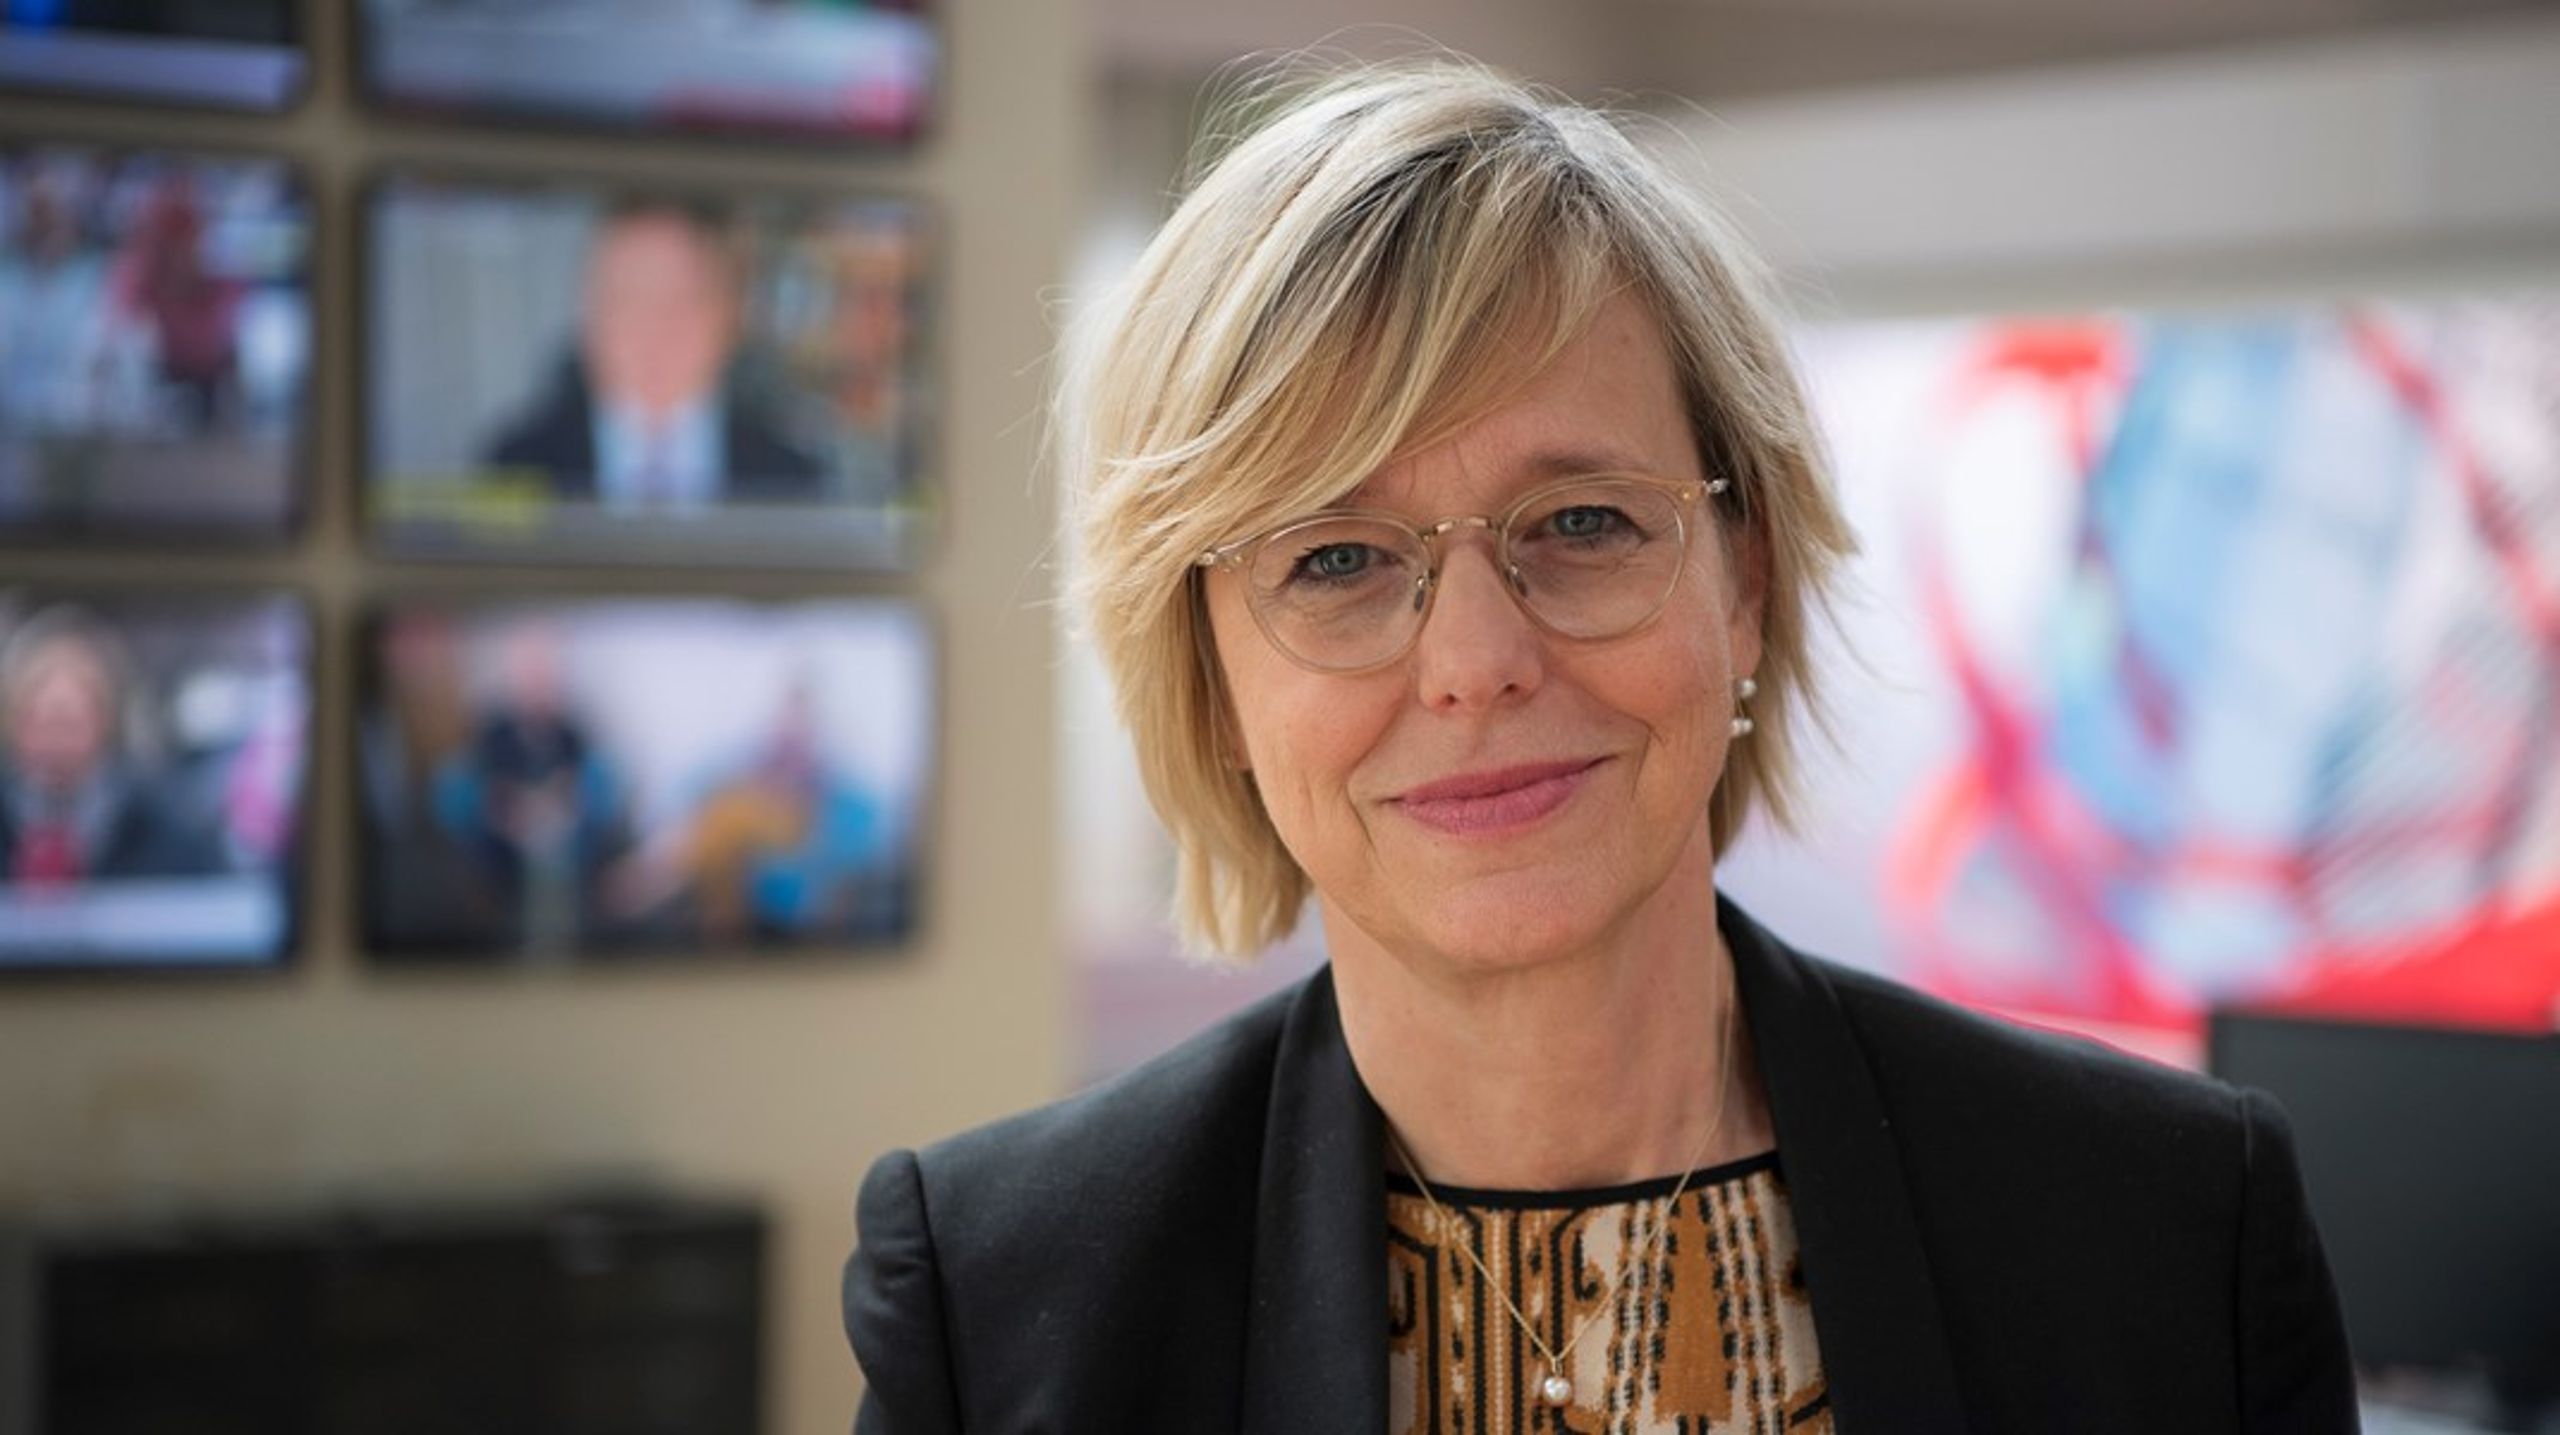 Nyhedsdirektør på TV 2, Ulla Pors, ser
techgiganternes nye nyhedsplatforme&nbsp;som "et meget farligt skridt i
retning af monopolisering af nyhedsstrømmen."